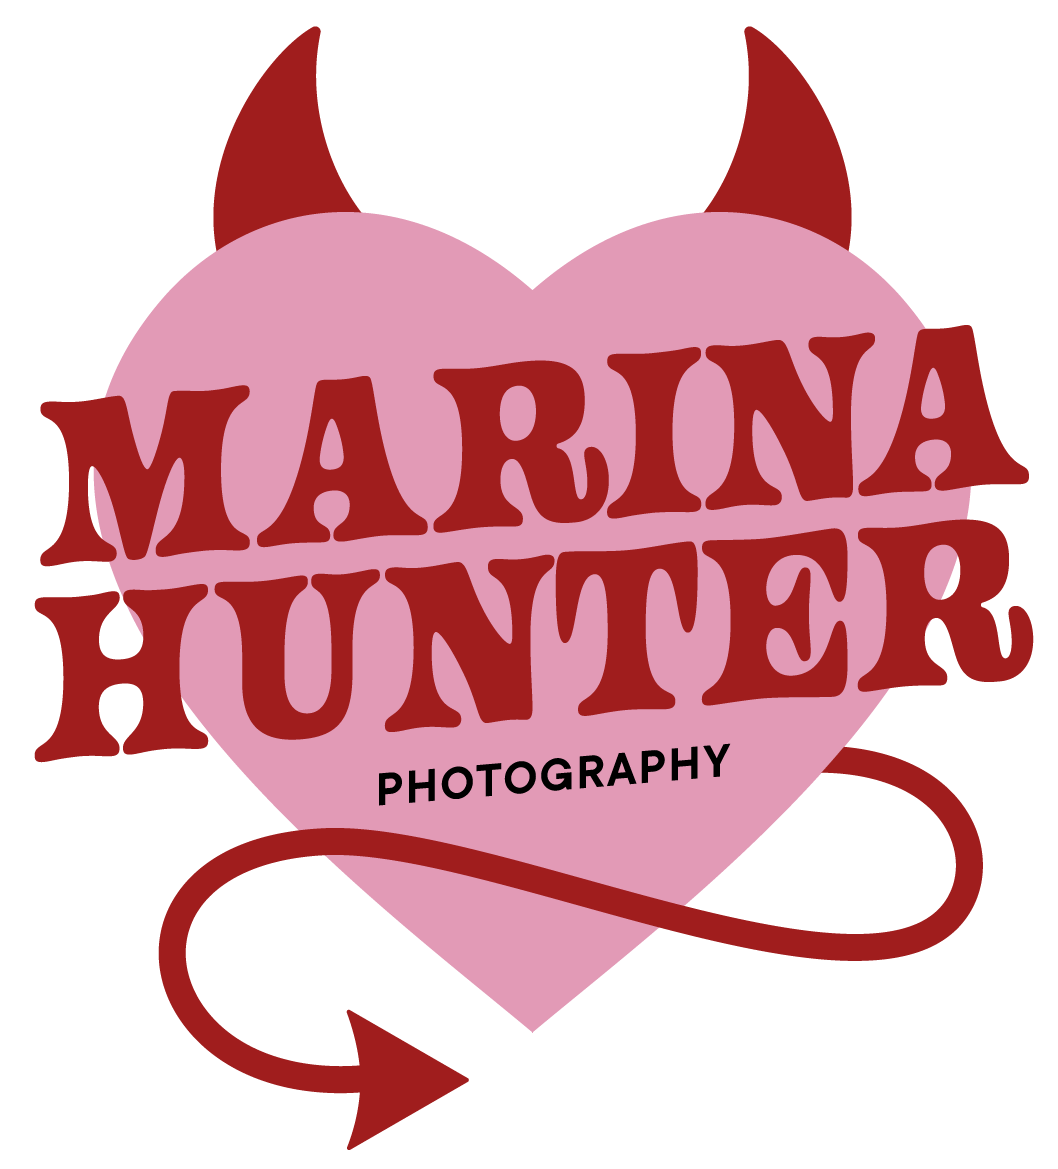 Marina Hunter Photography